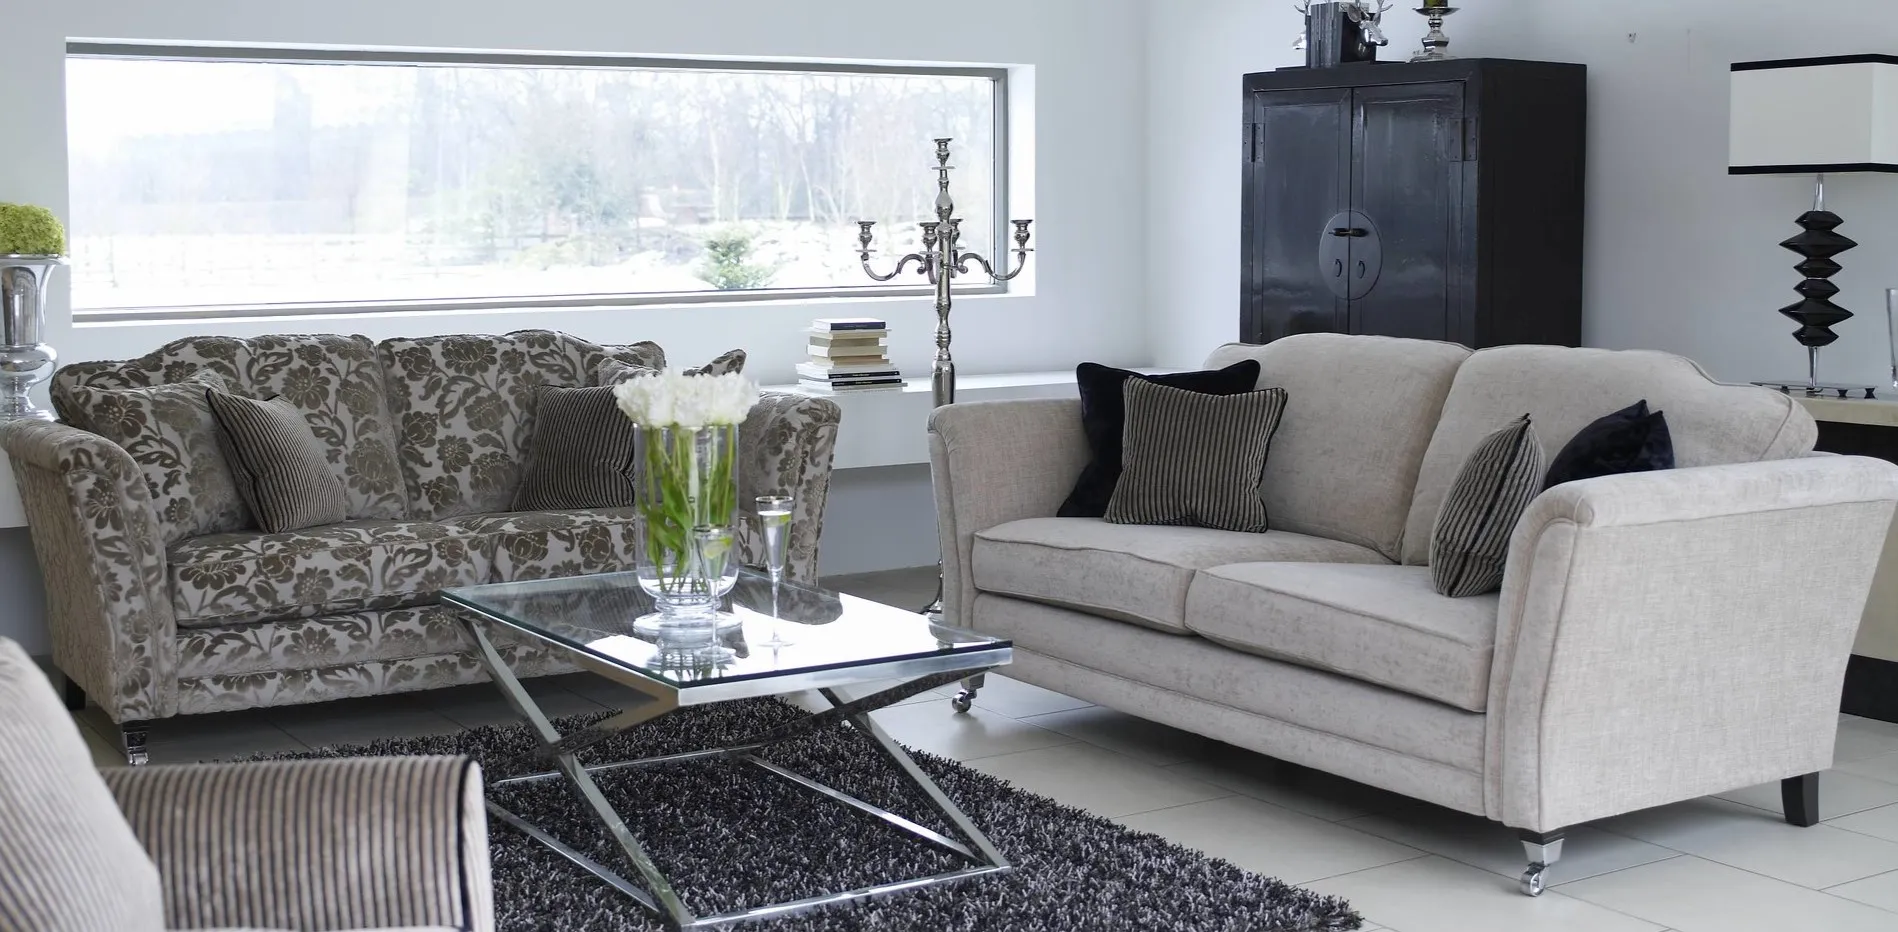 Из двух небольших диванов можно создать удобную зону отдыха в гостиной